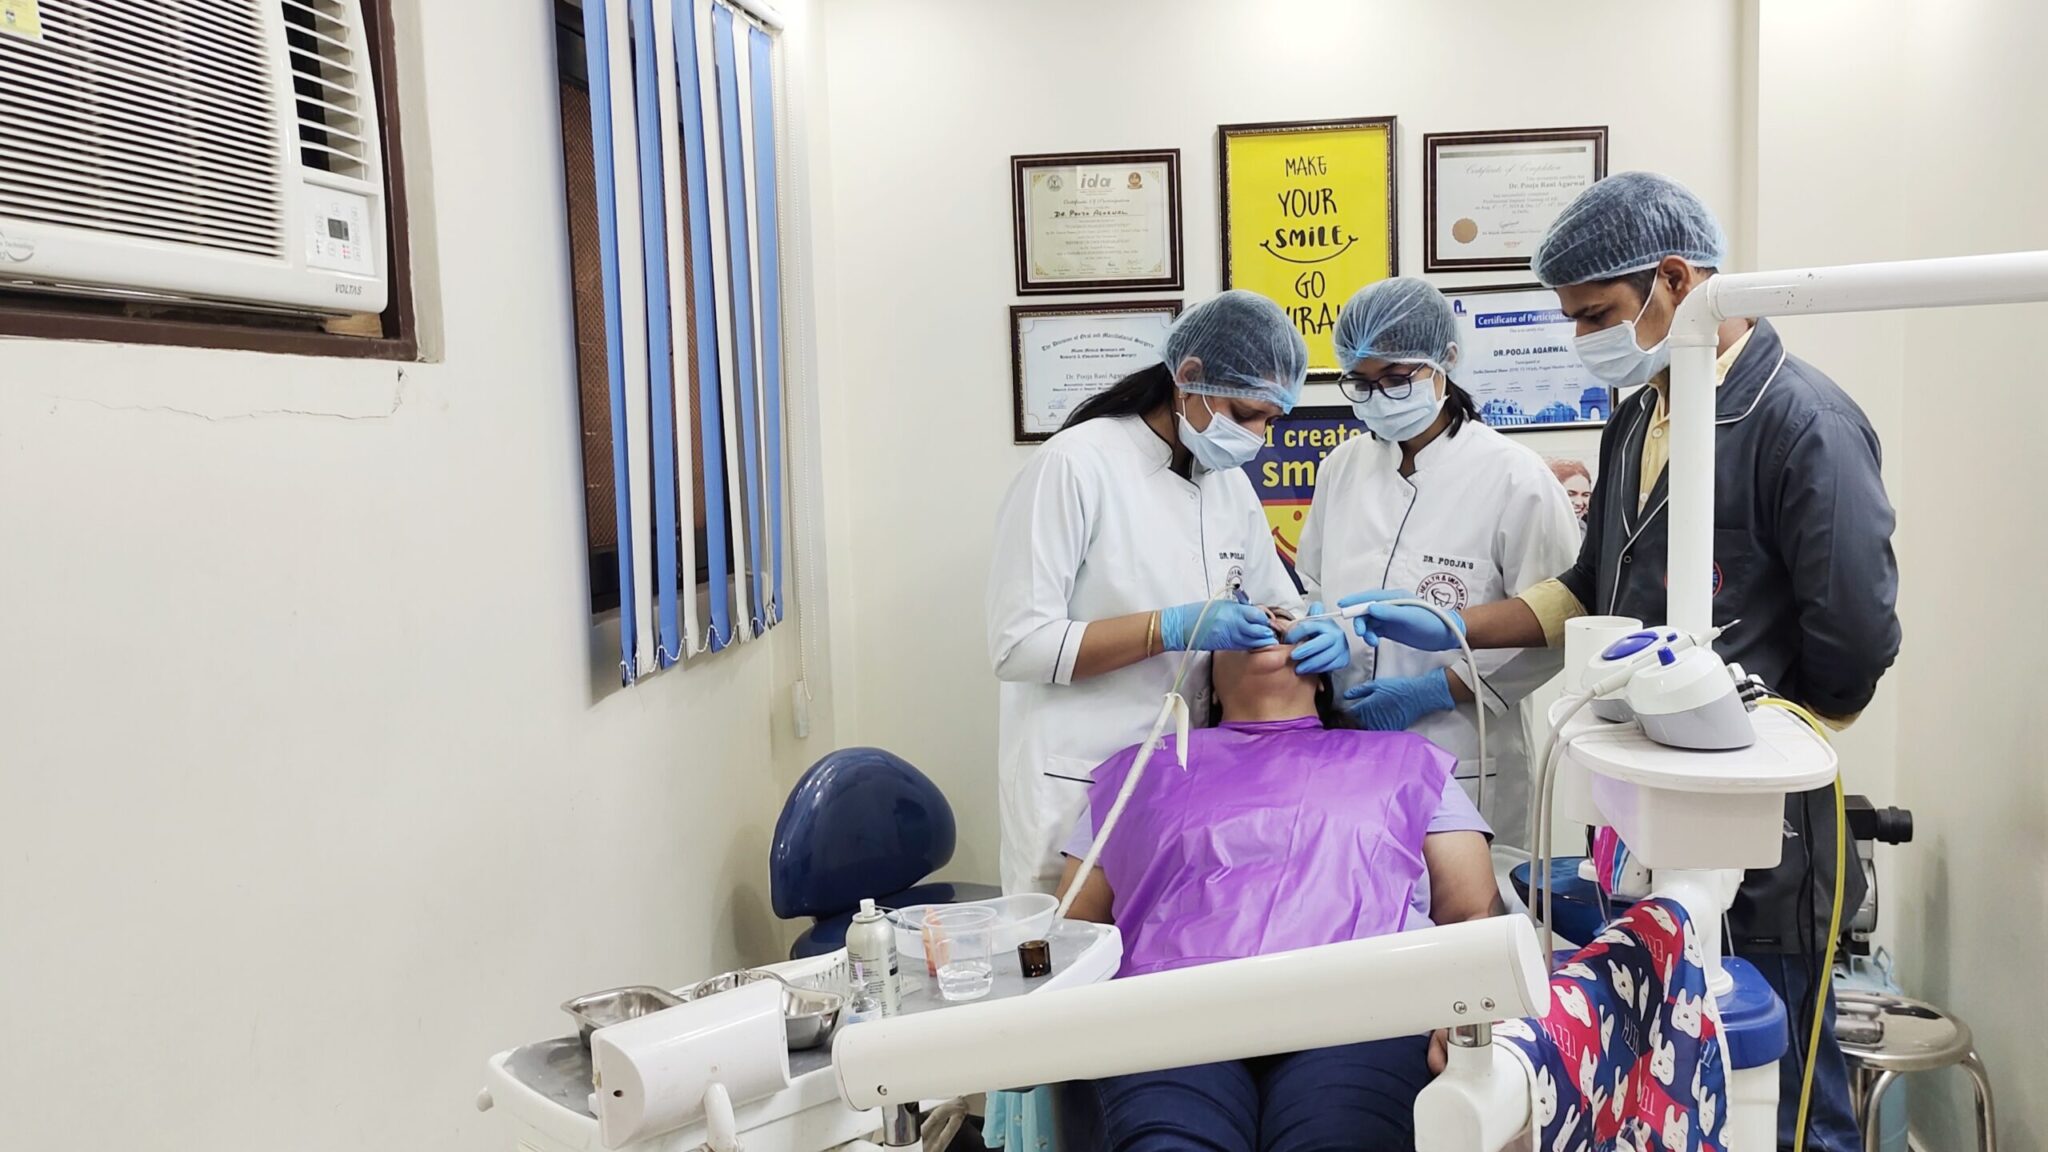 5.Dental Unit 1 For Regular Procedures